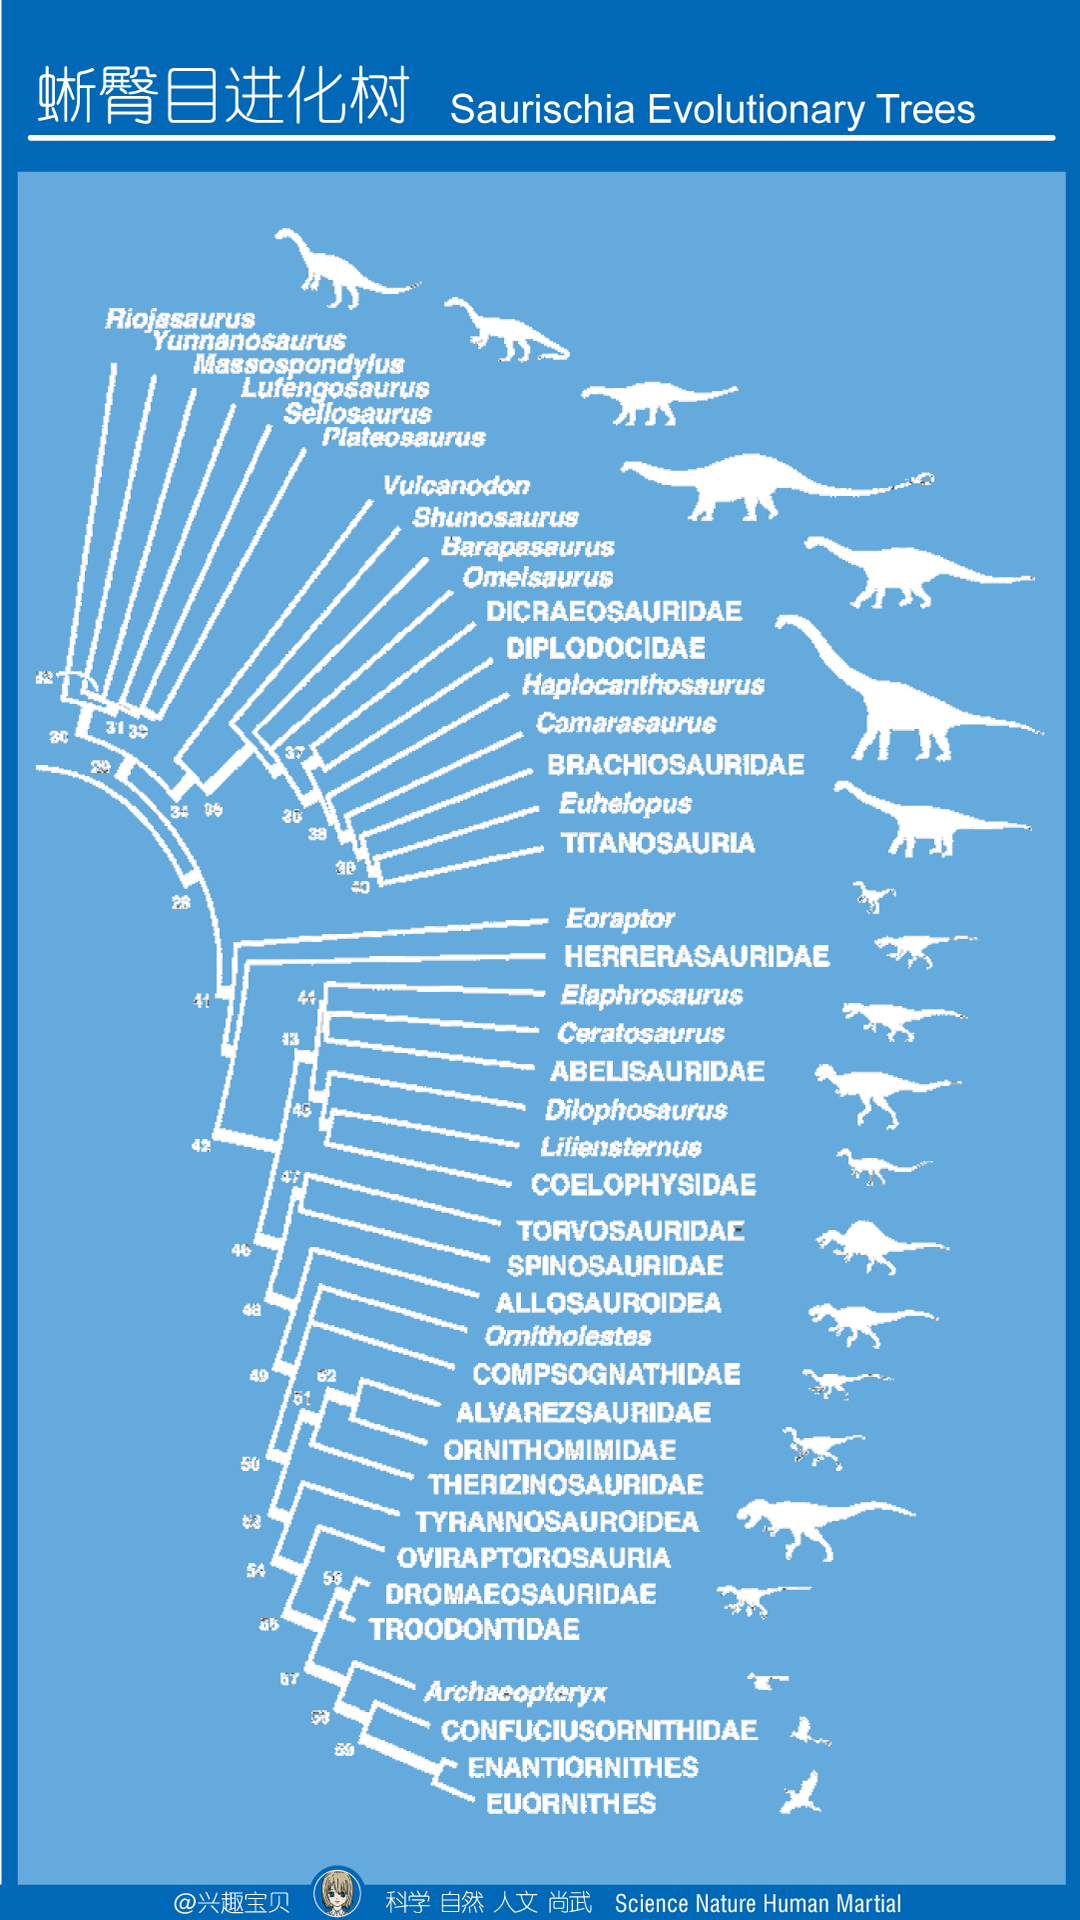 恐龙的种类有哪些?